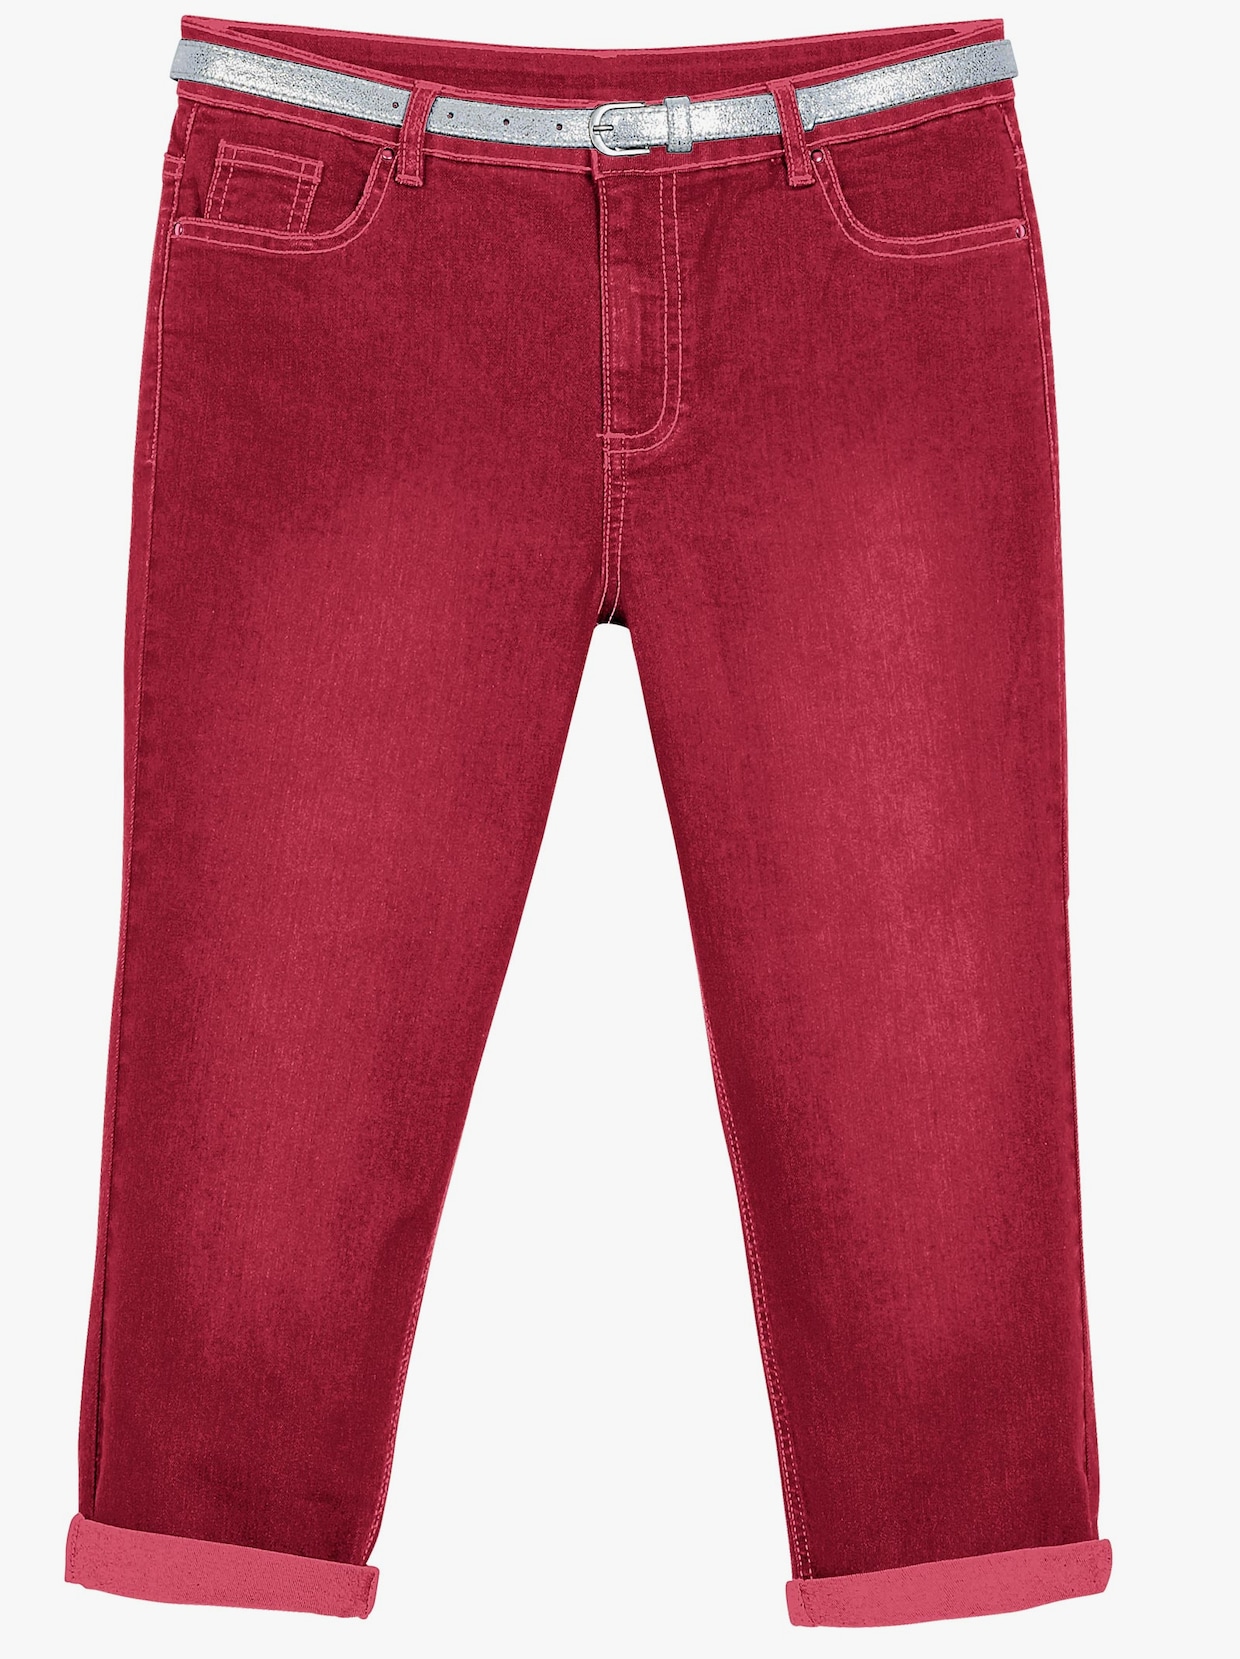 Capri kalhoty - červená